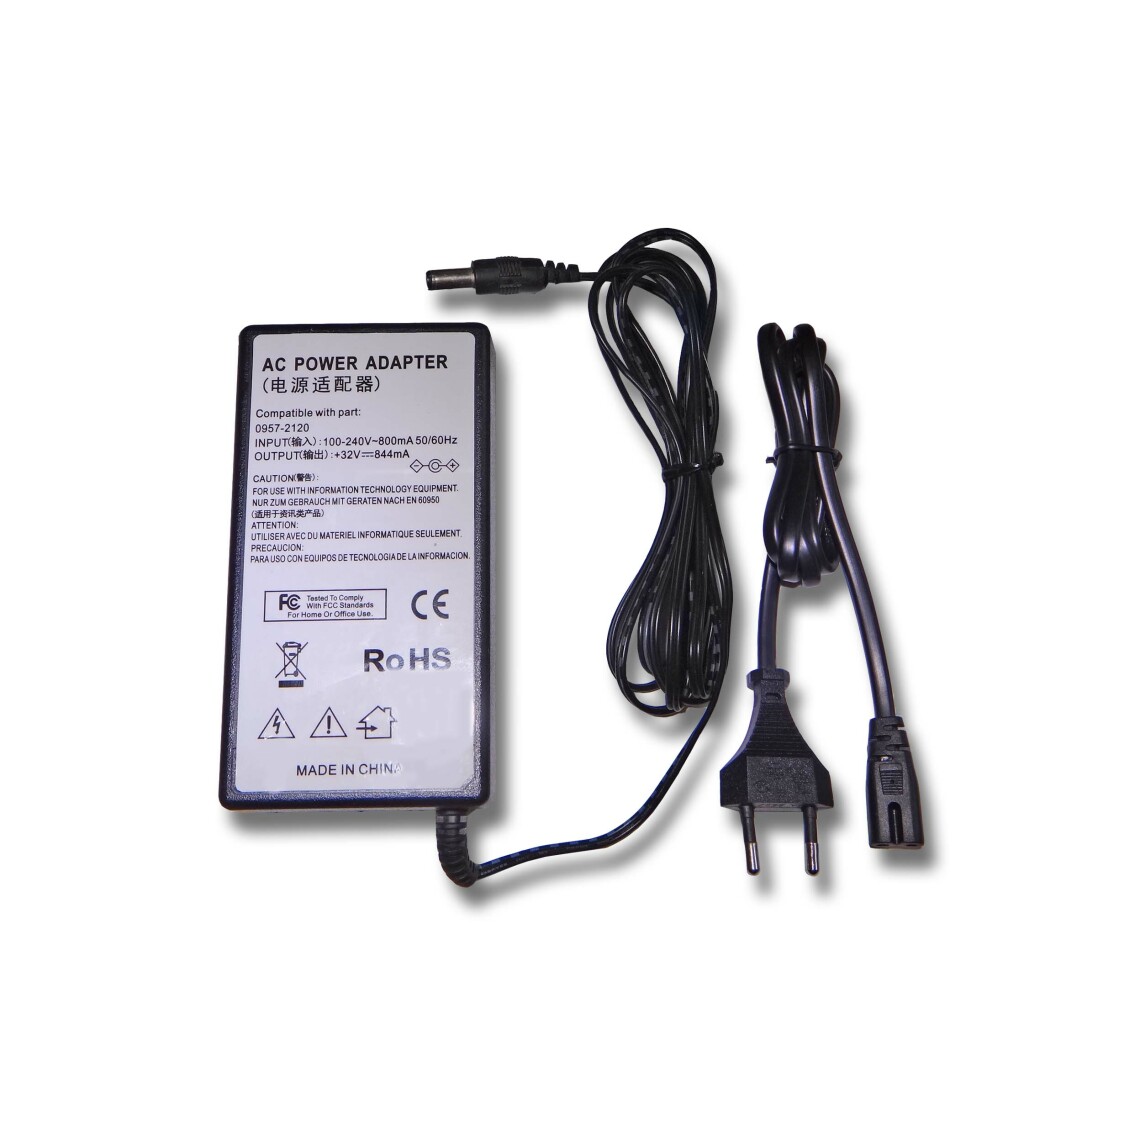 Vhbw - vhbw Imprimante Adaptateur bloc d'alimentation Câble d'alimentation Chargeur compatible avec HP Photosmart A618, A626, A636, A646 imprimante - 0.844A - Accessoires alimentation